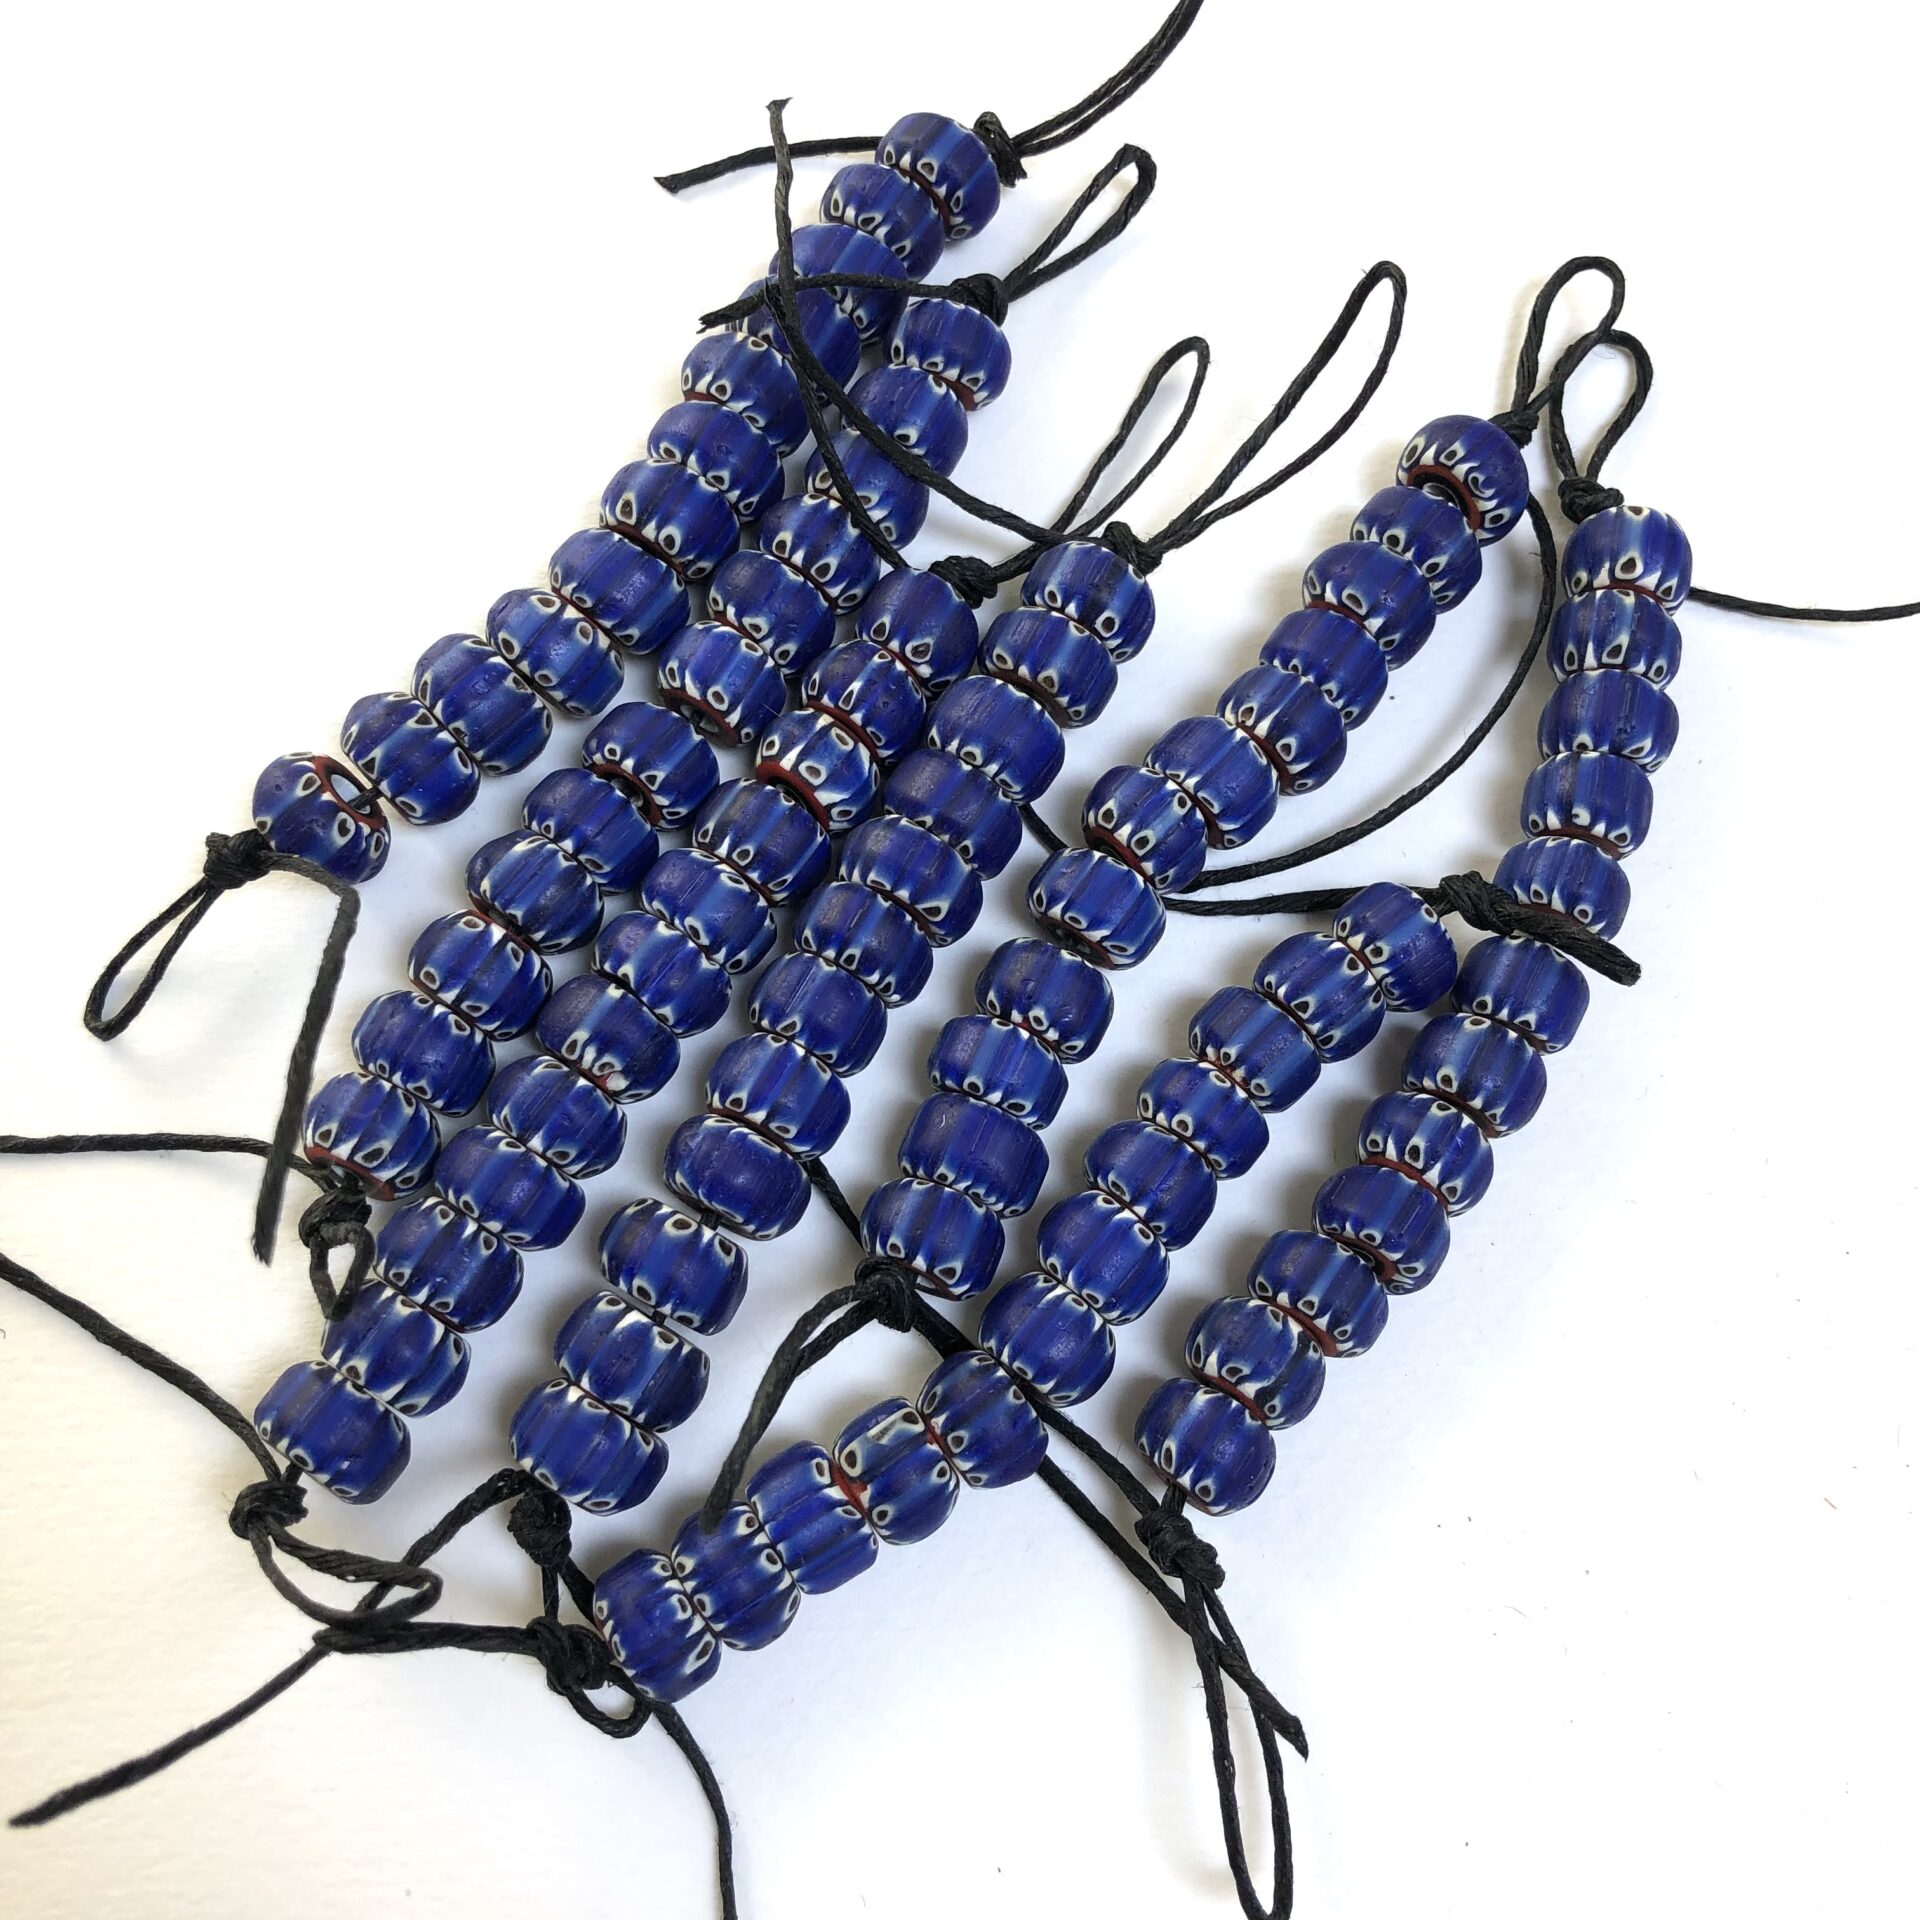 Blue Chevron Beads